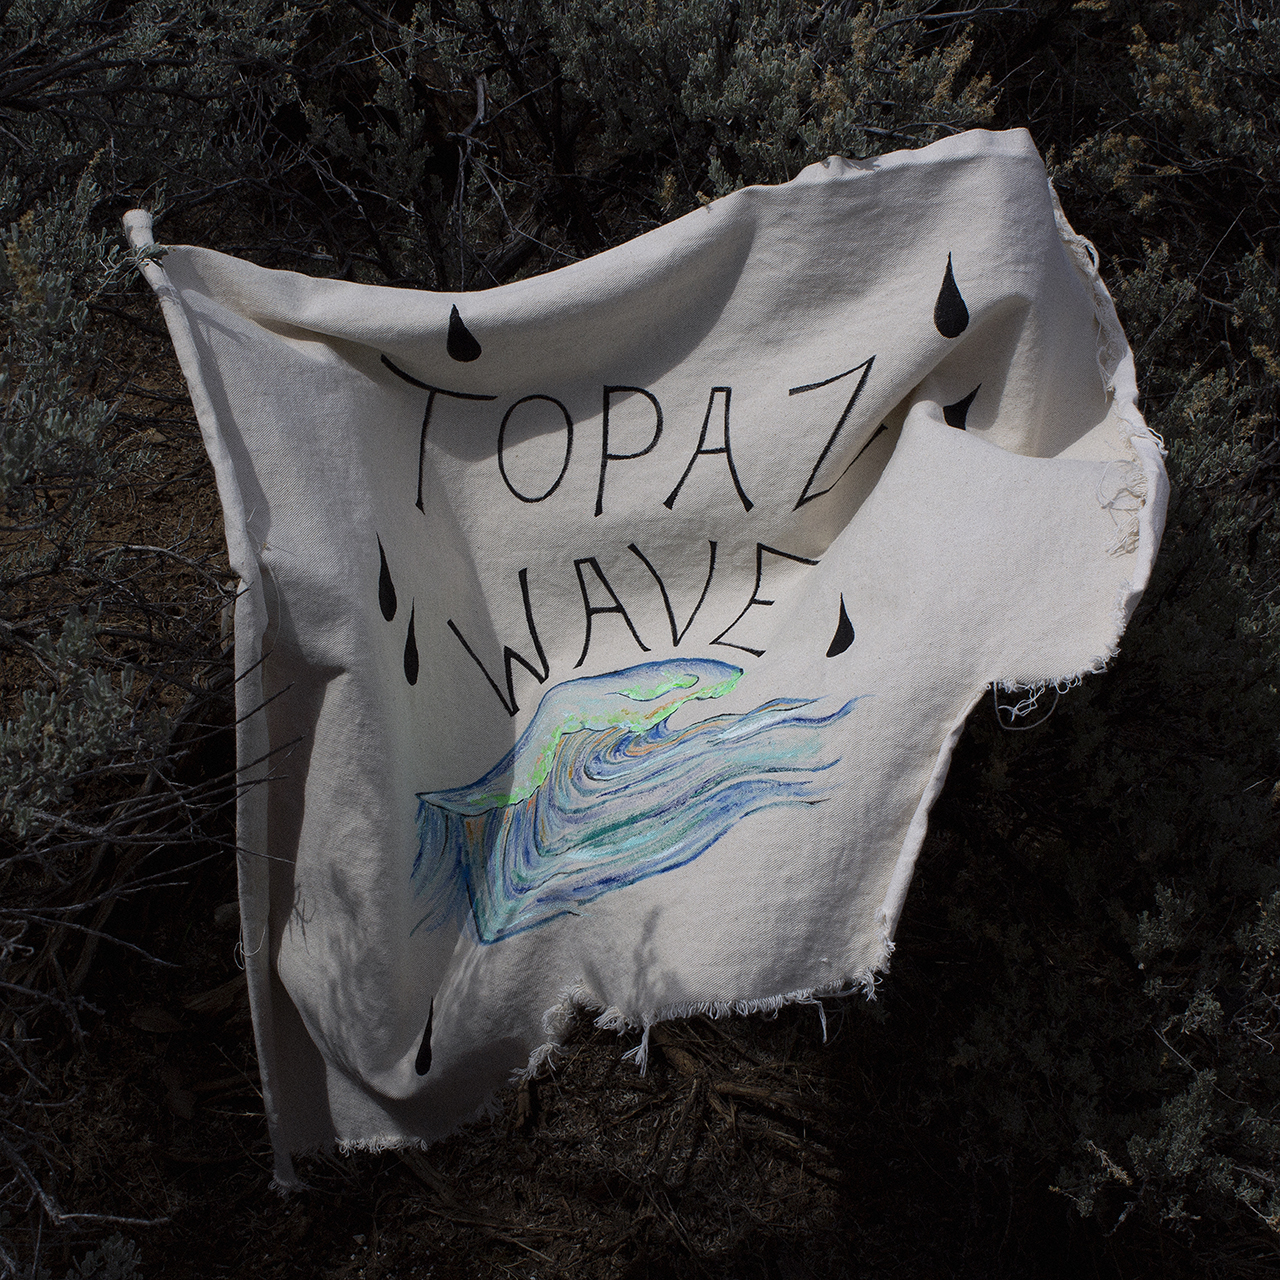 Topaz Wave